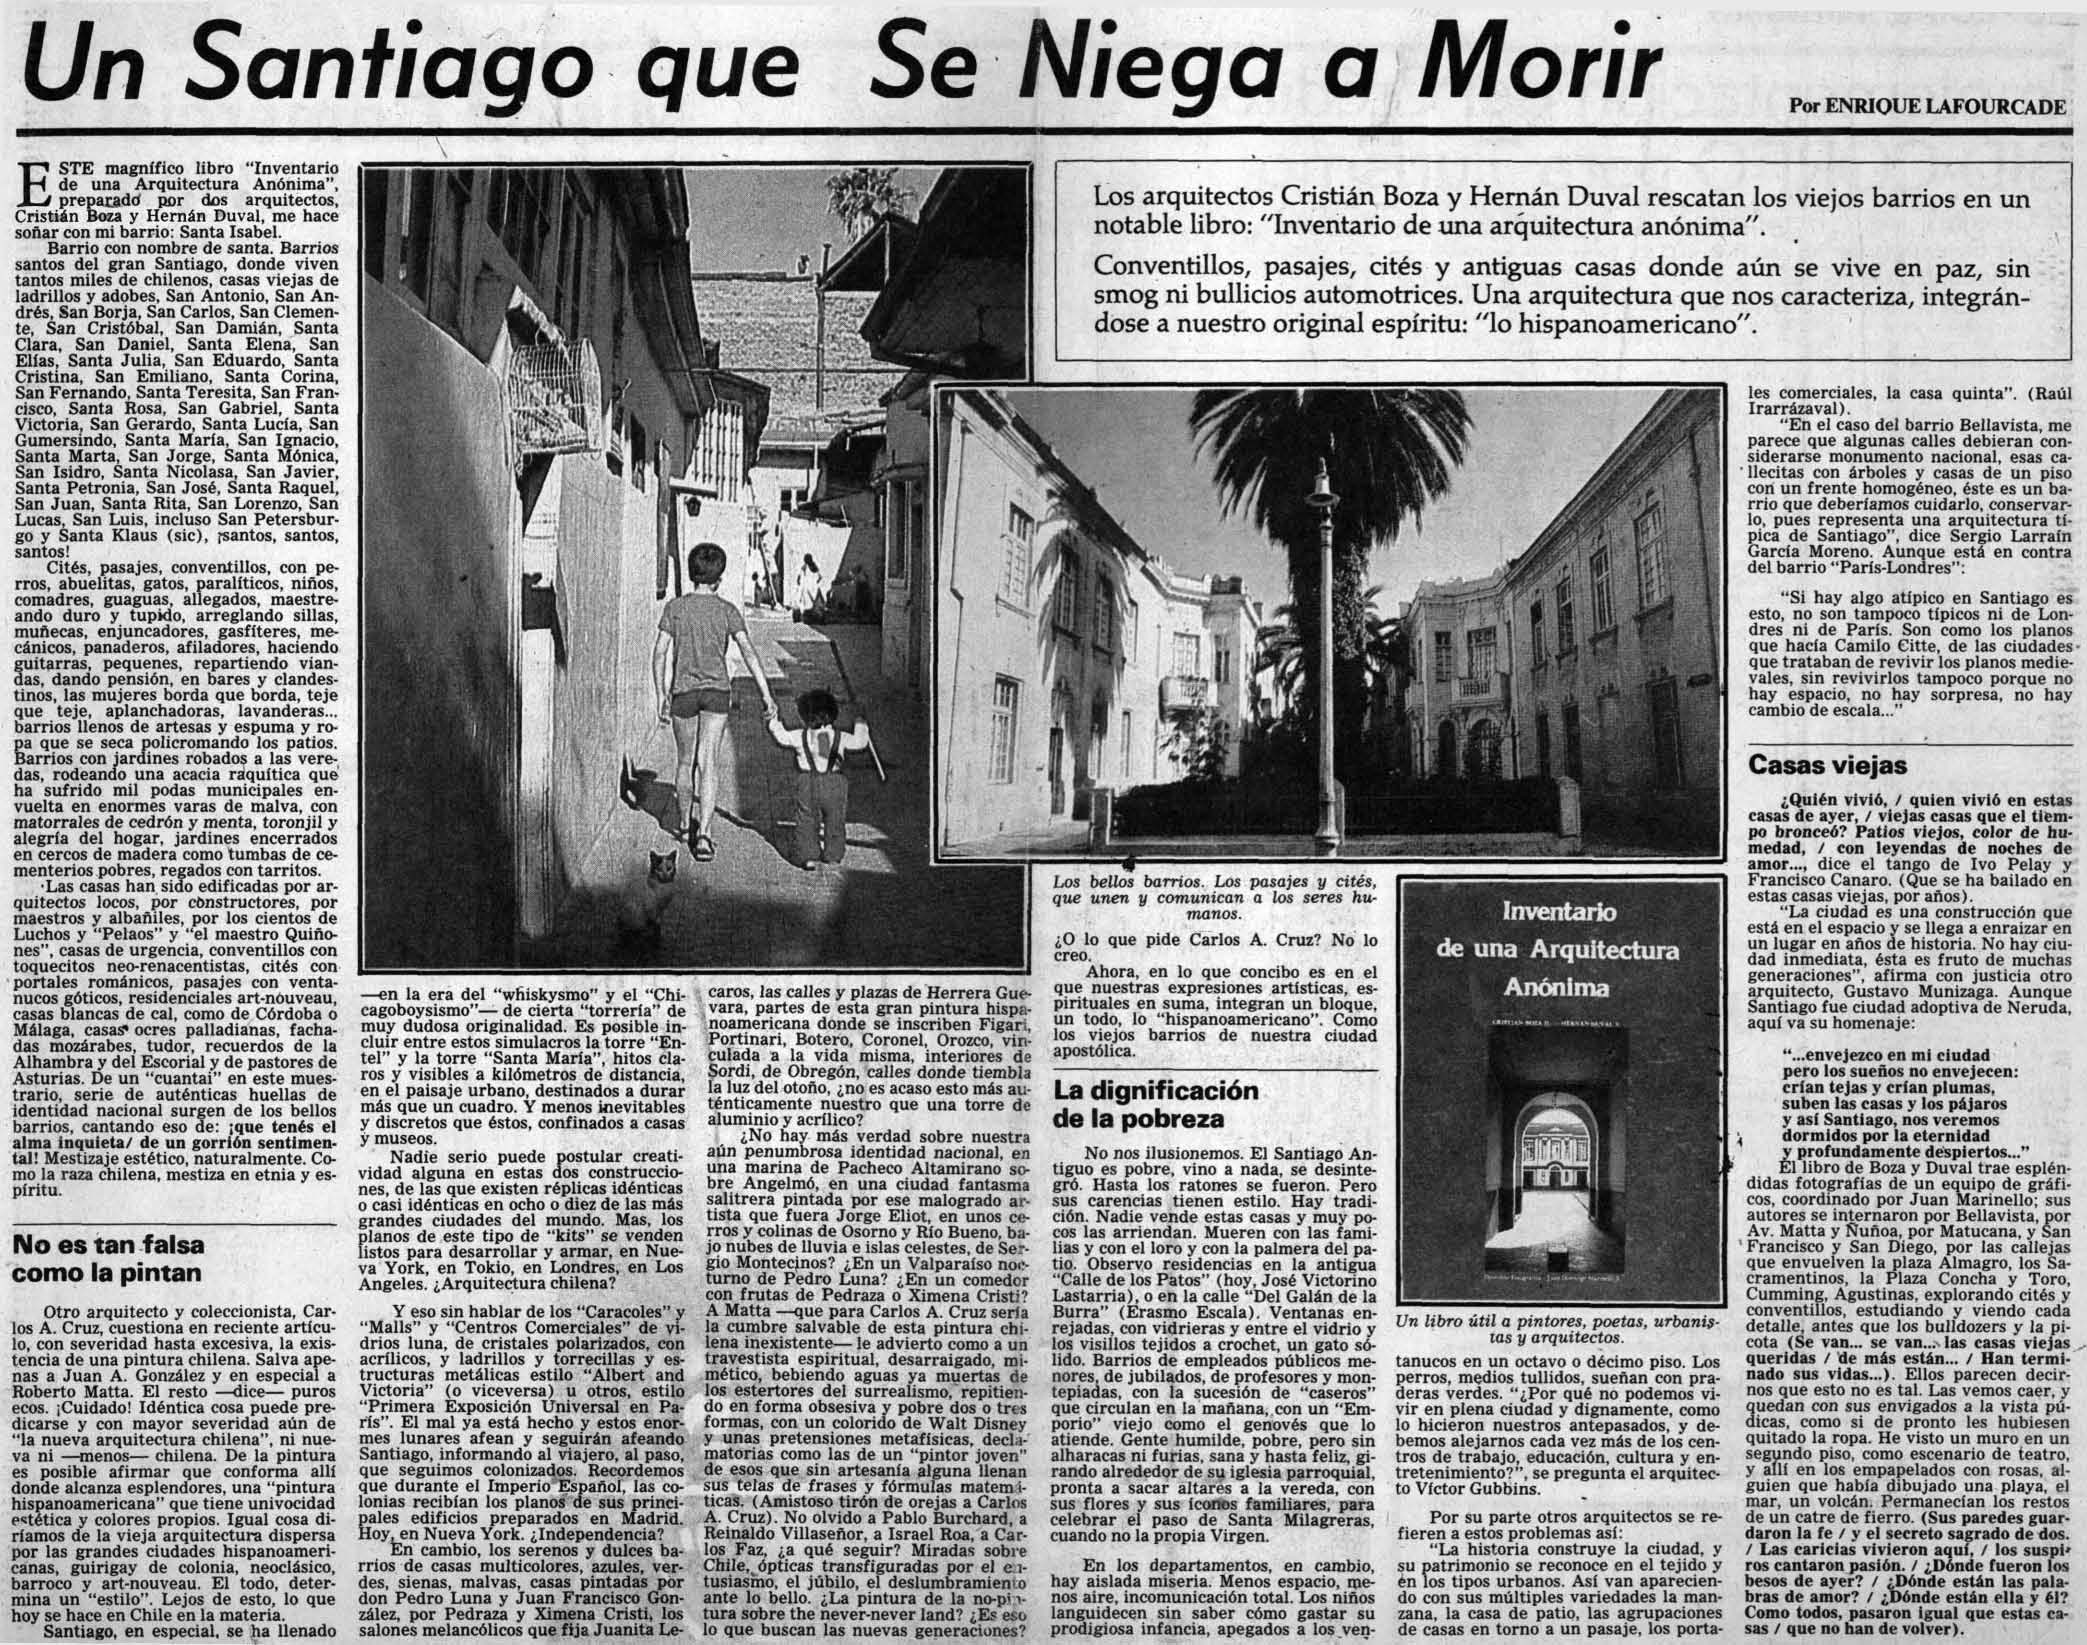 Un Santiago que se niega a morir [artículo] Enrique Lafourcade